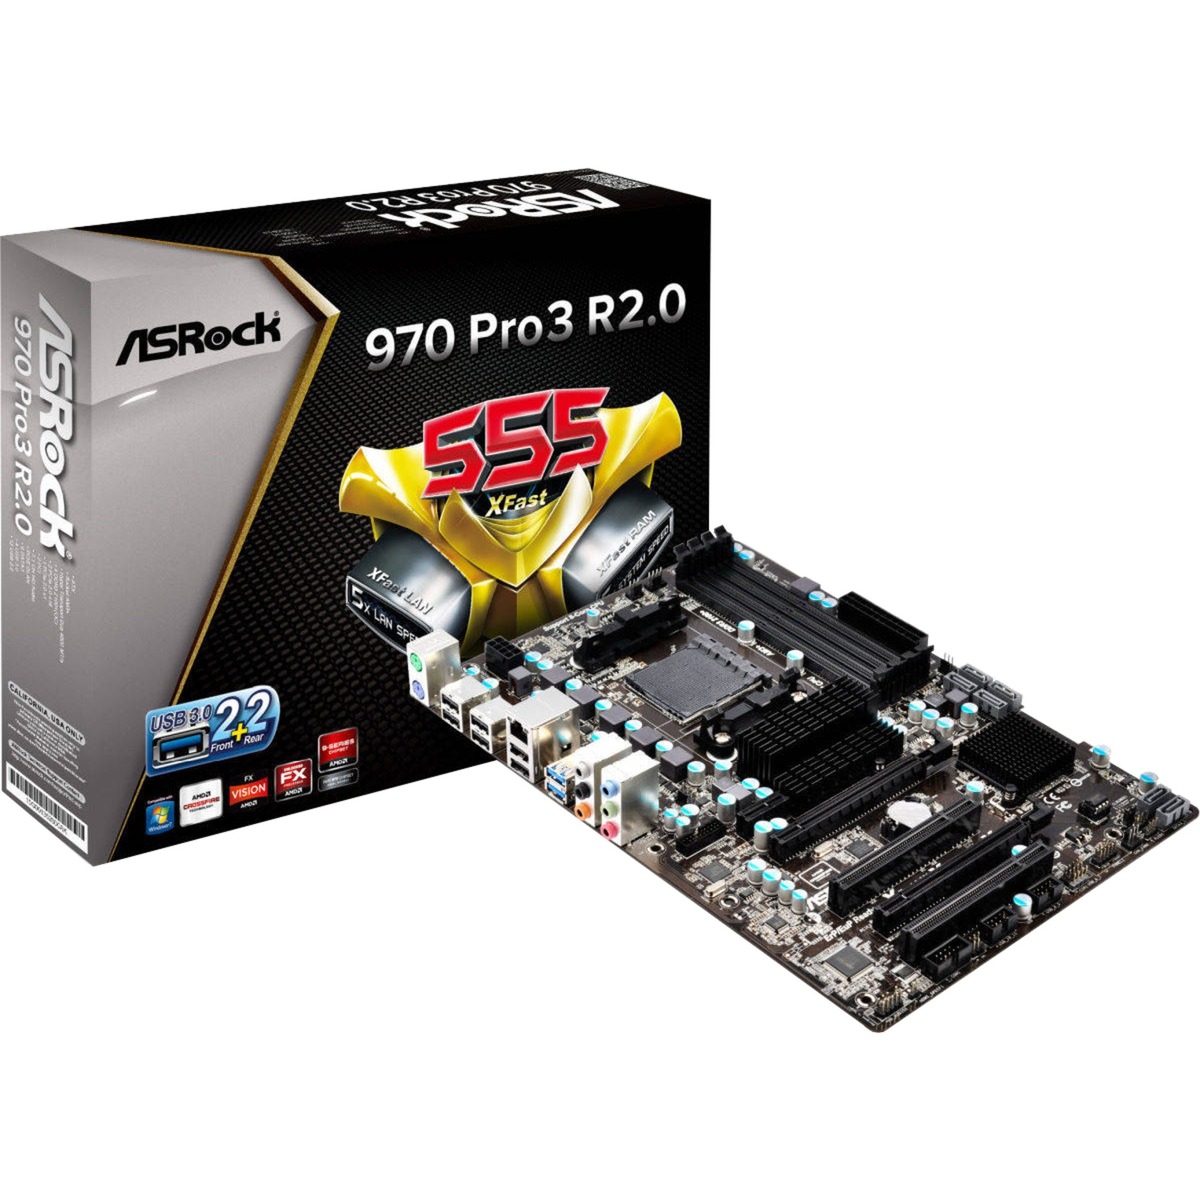 970 Pro3 R2.0 Socket AM3+ AMD 970 ATX, Płyta główna